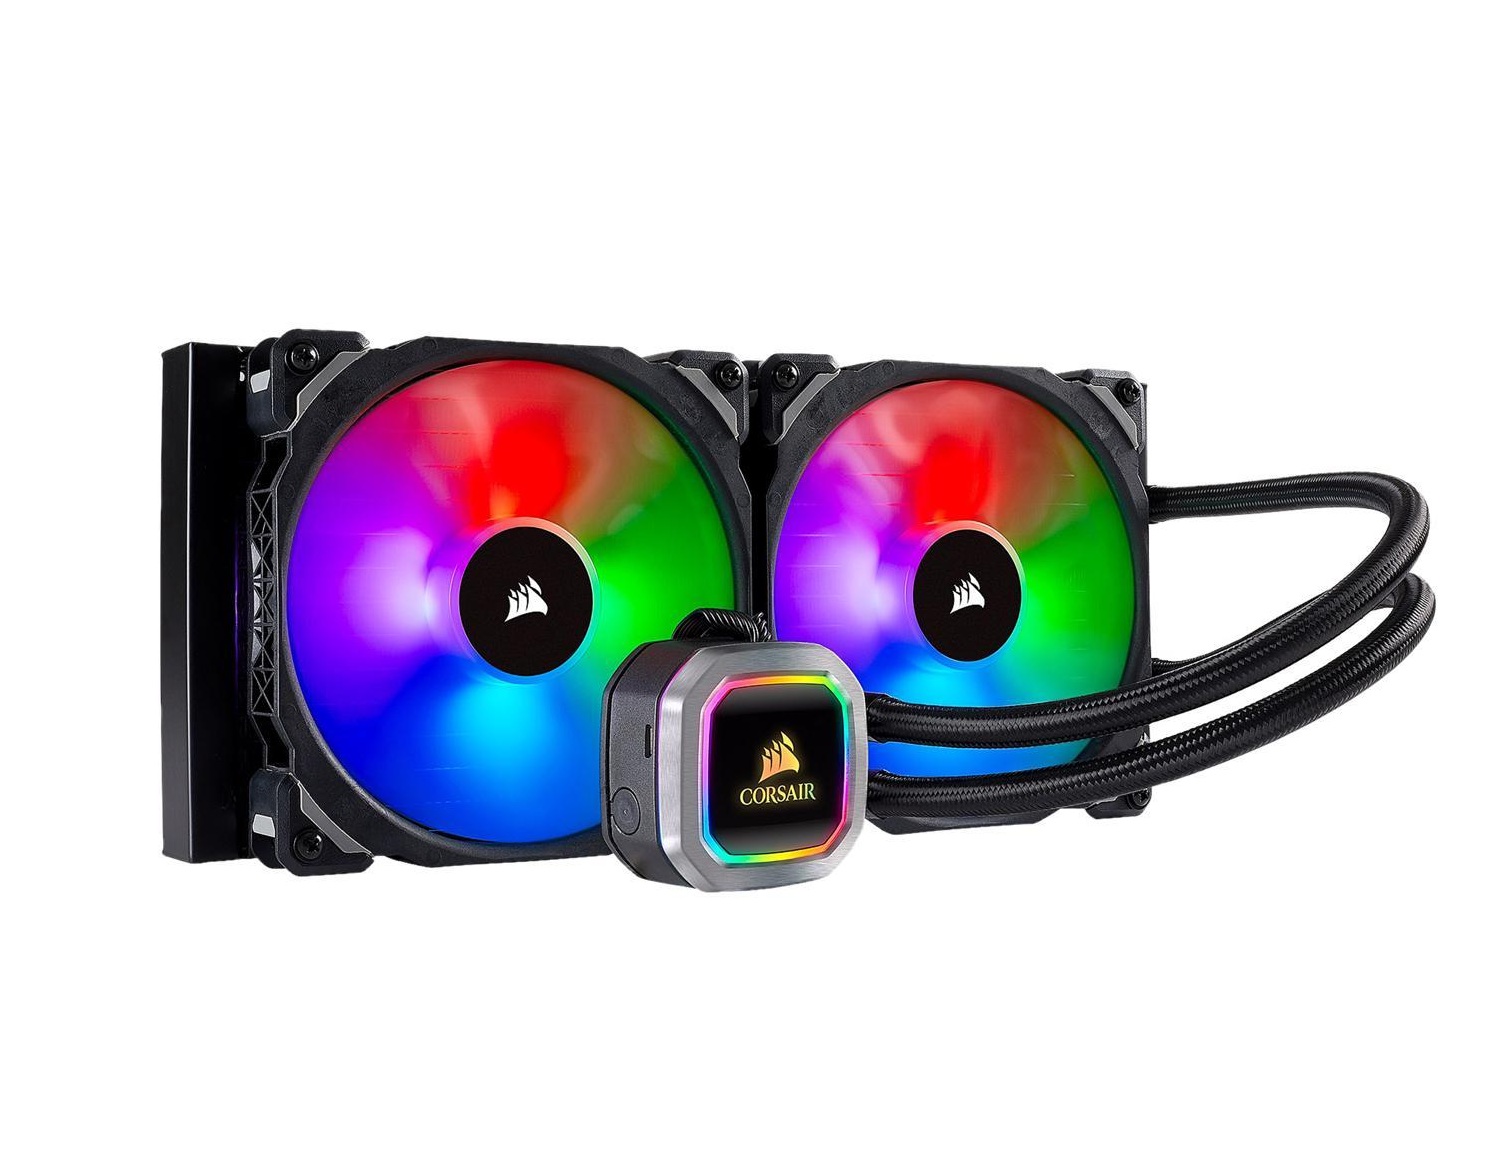 Corsair Extreme Performance RGB Liquid CPU Coolers H100i Platinum, H115i Platinum User Manual